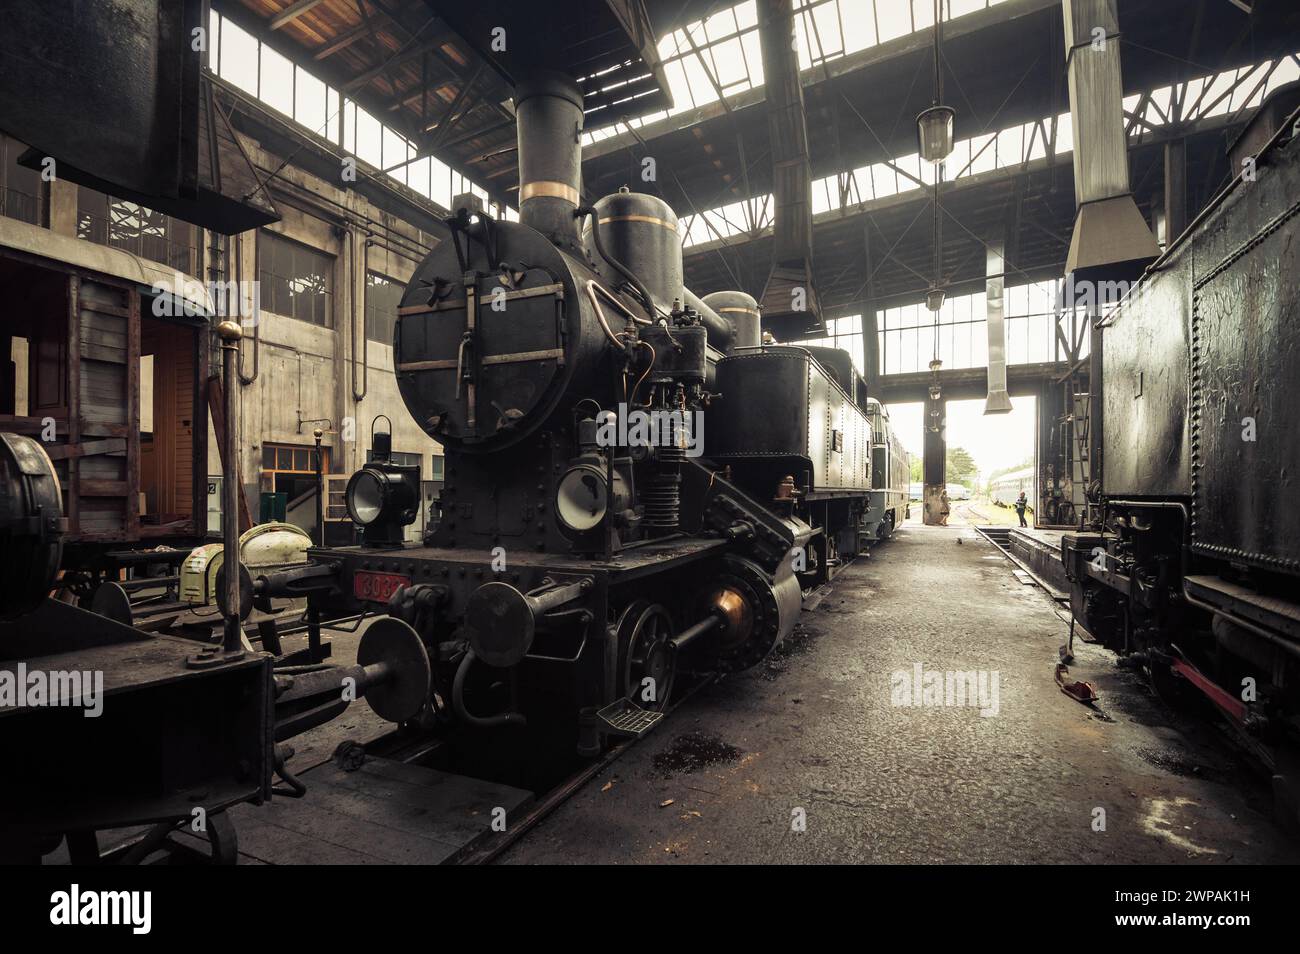 Vieille locomotive à vapeur kkStB 30 et autres trains autour dans le dépôt de train. L'air à l'intérieur du hangar est rempli de fumée brumeuse. Image dans des tons bruns chauds. Banque D'Images